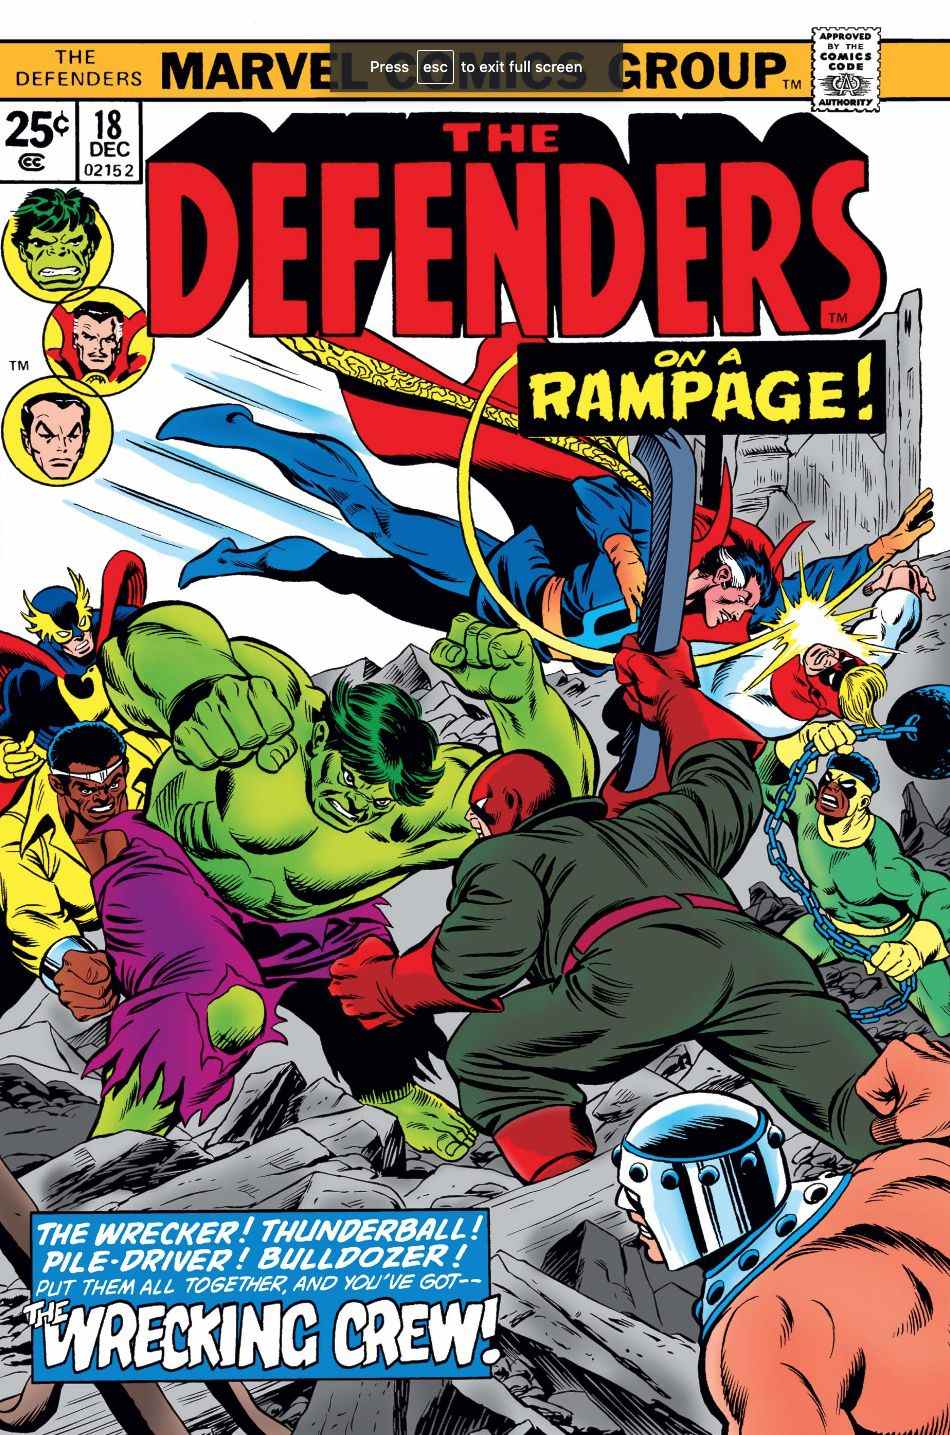 Couverture de Defenders mettant en vedette The Wrecking Crew allant de pair avec Hulk et Doctor Strange